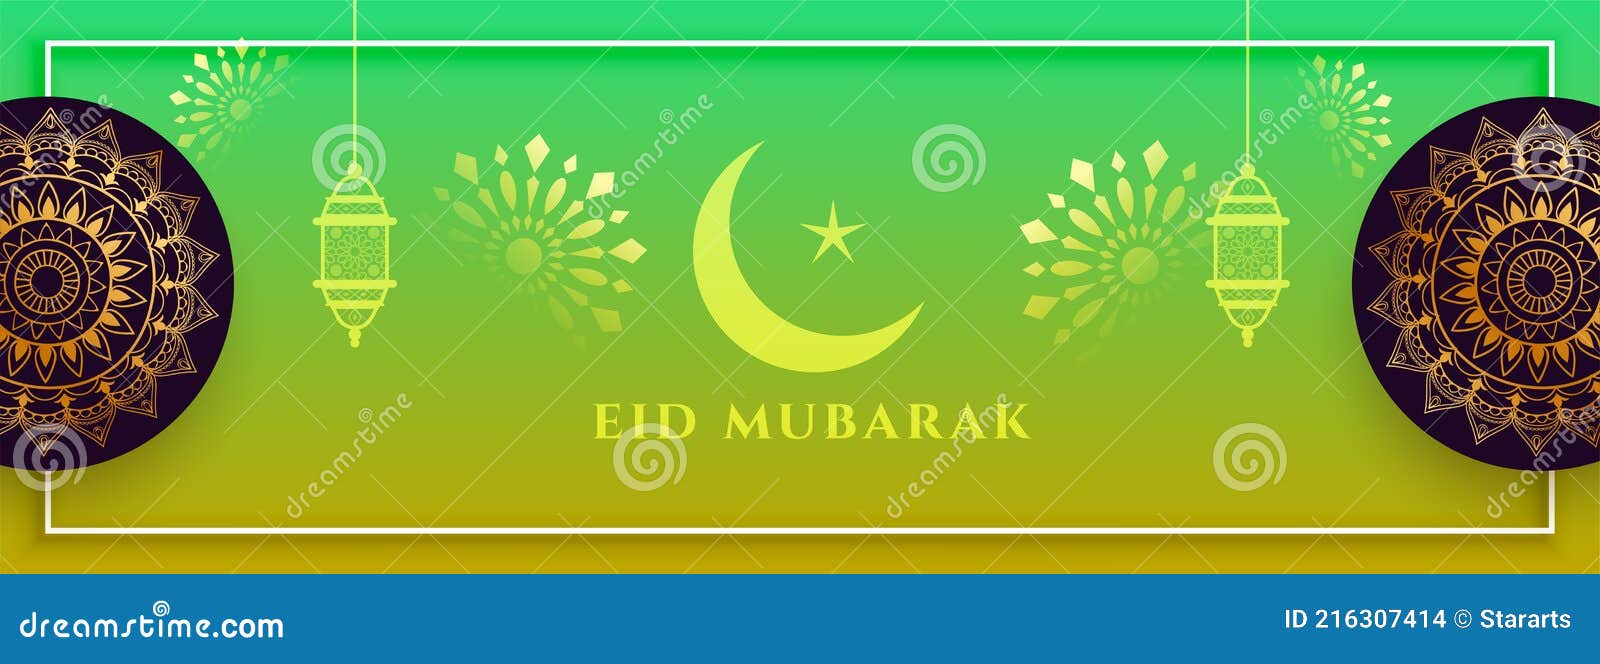 Bạn yêu thích thiết kế đẹp mắt và độc đáo cho băng rôn chào mừng Eid Mubarak? Hãy cùng ngắm nhìn hình ảnh hình ảnh Islam trang trí tuyệt đẹp trong thiết kế băng rôn này nhé!